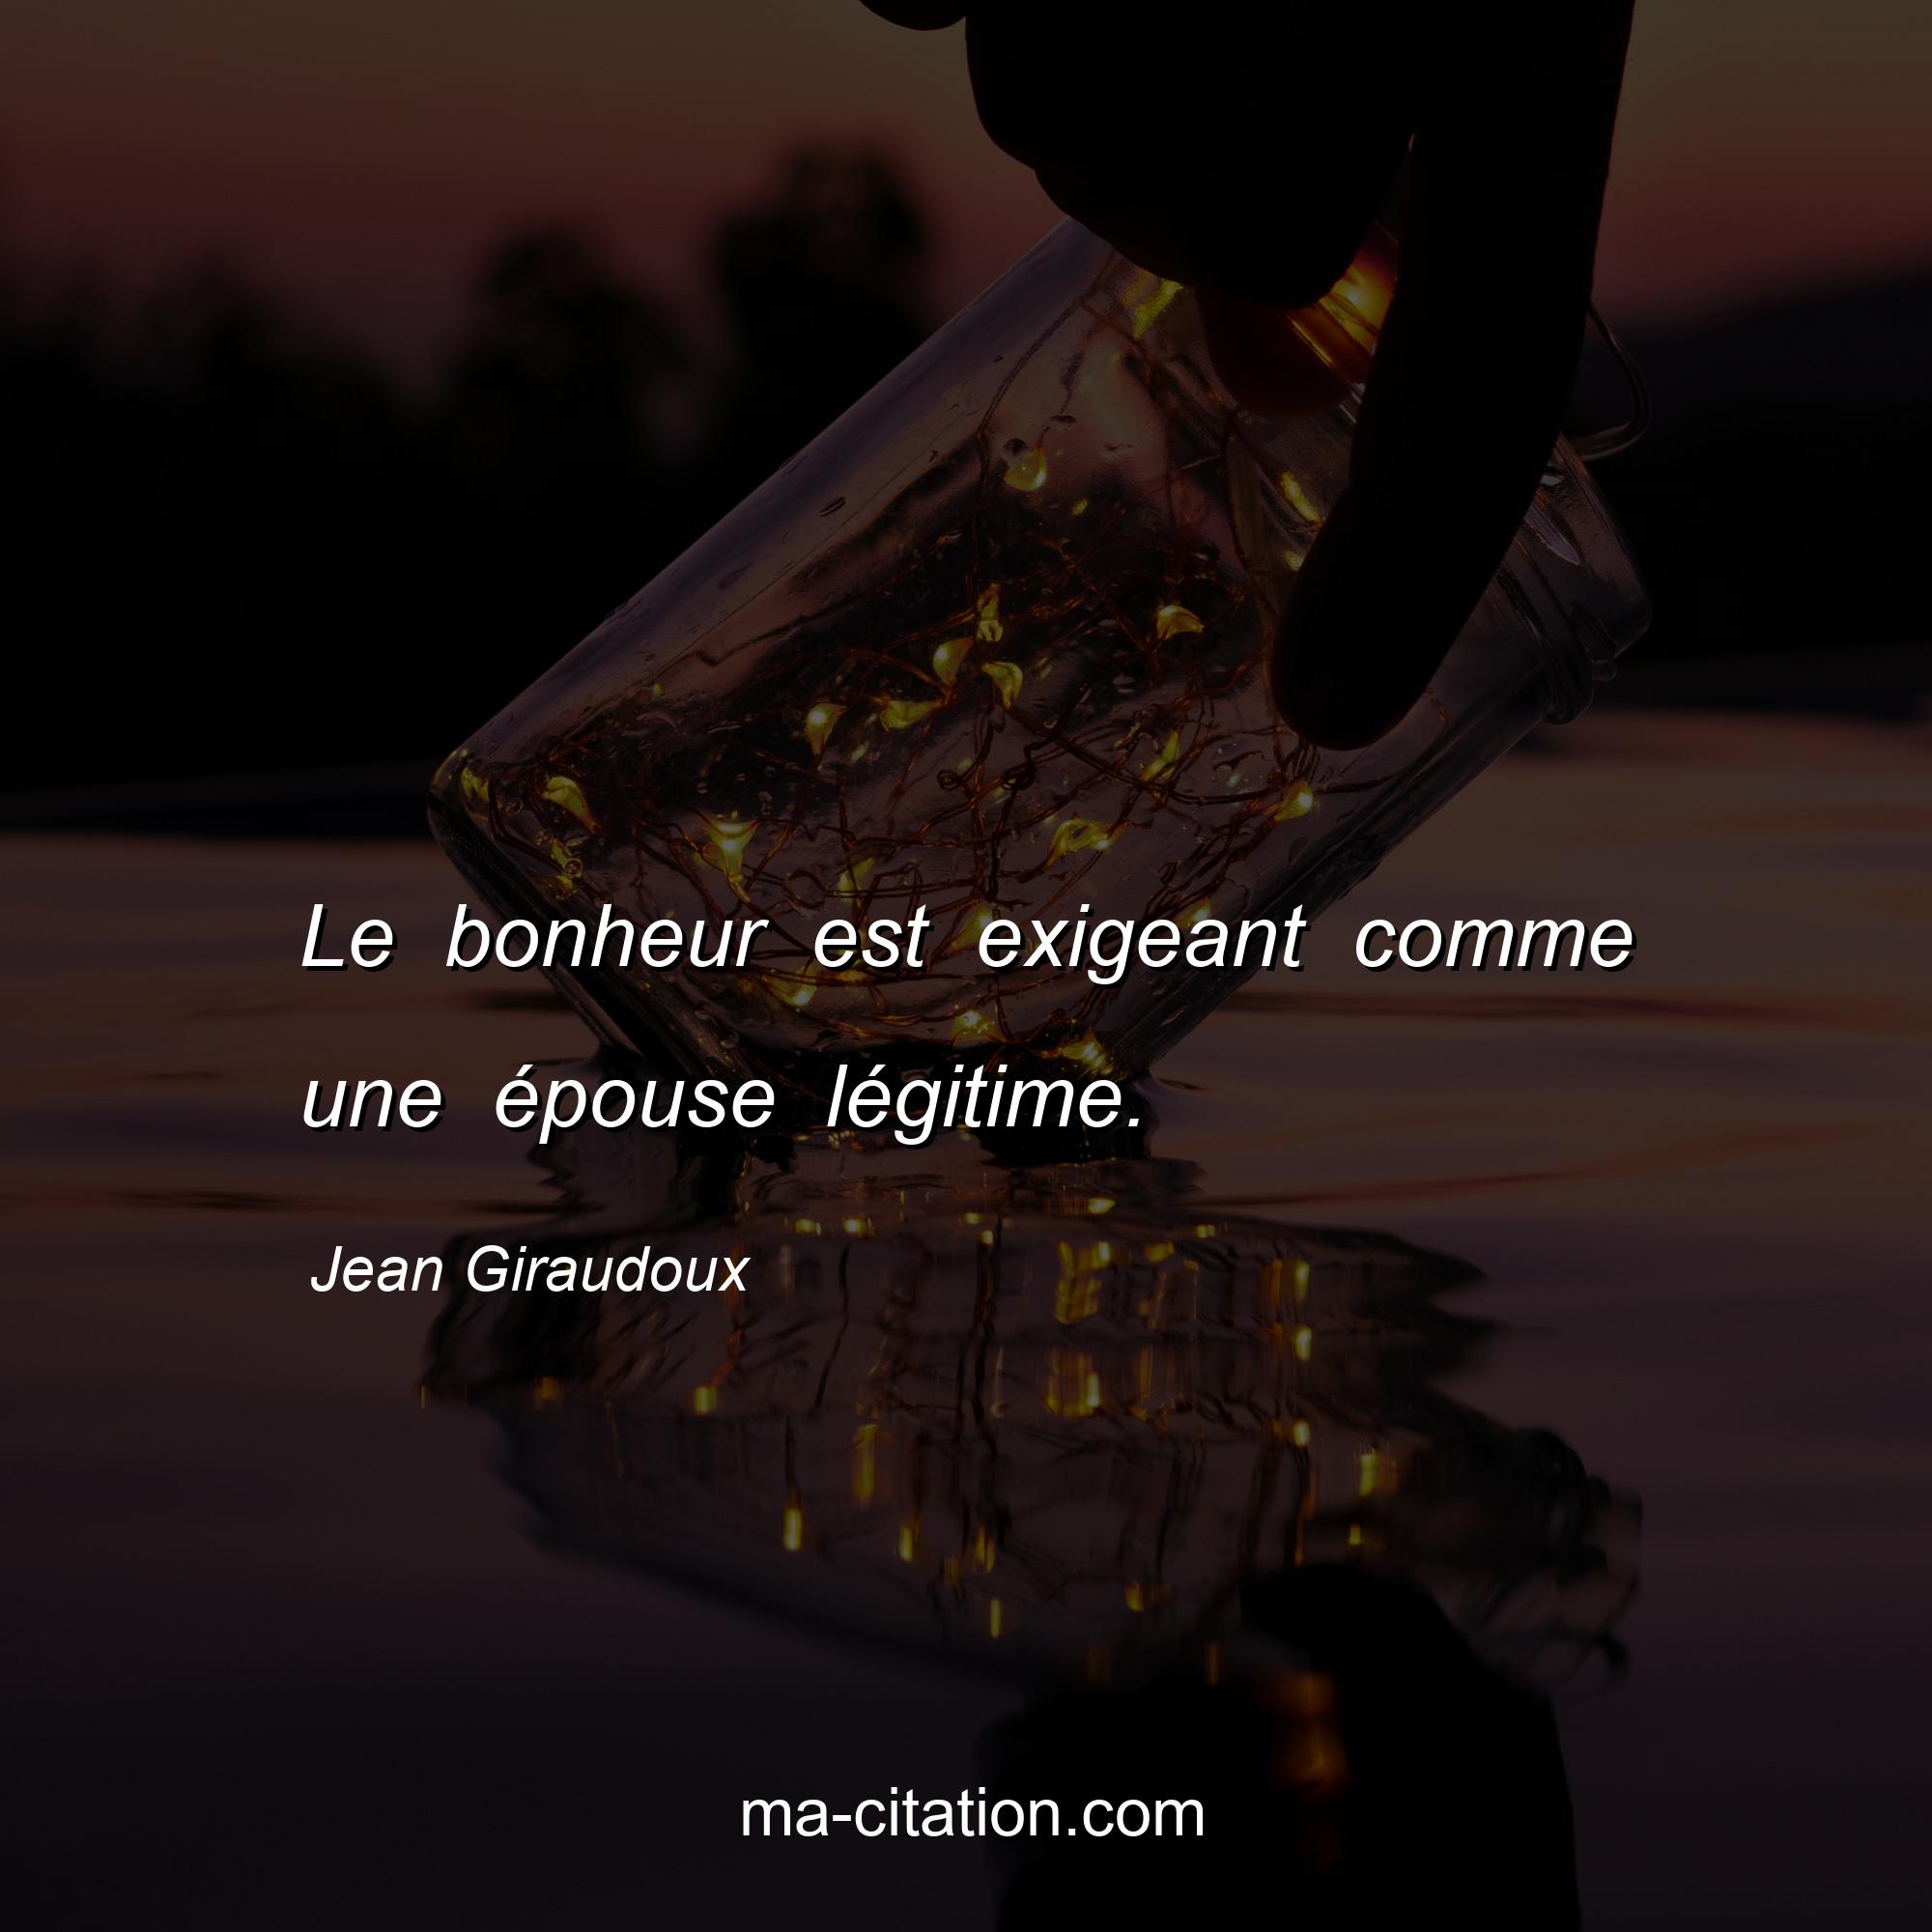 Jean Giraudoux : Le bonheur est exigeant comme une épouse légitime.